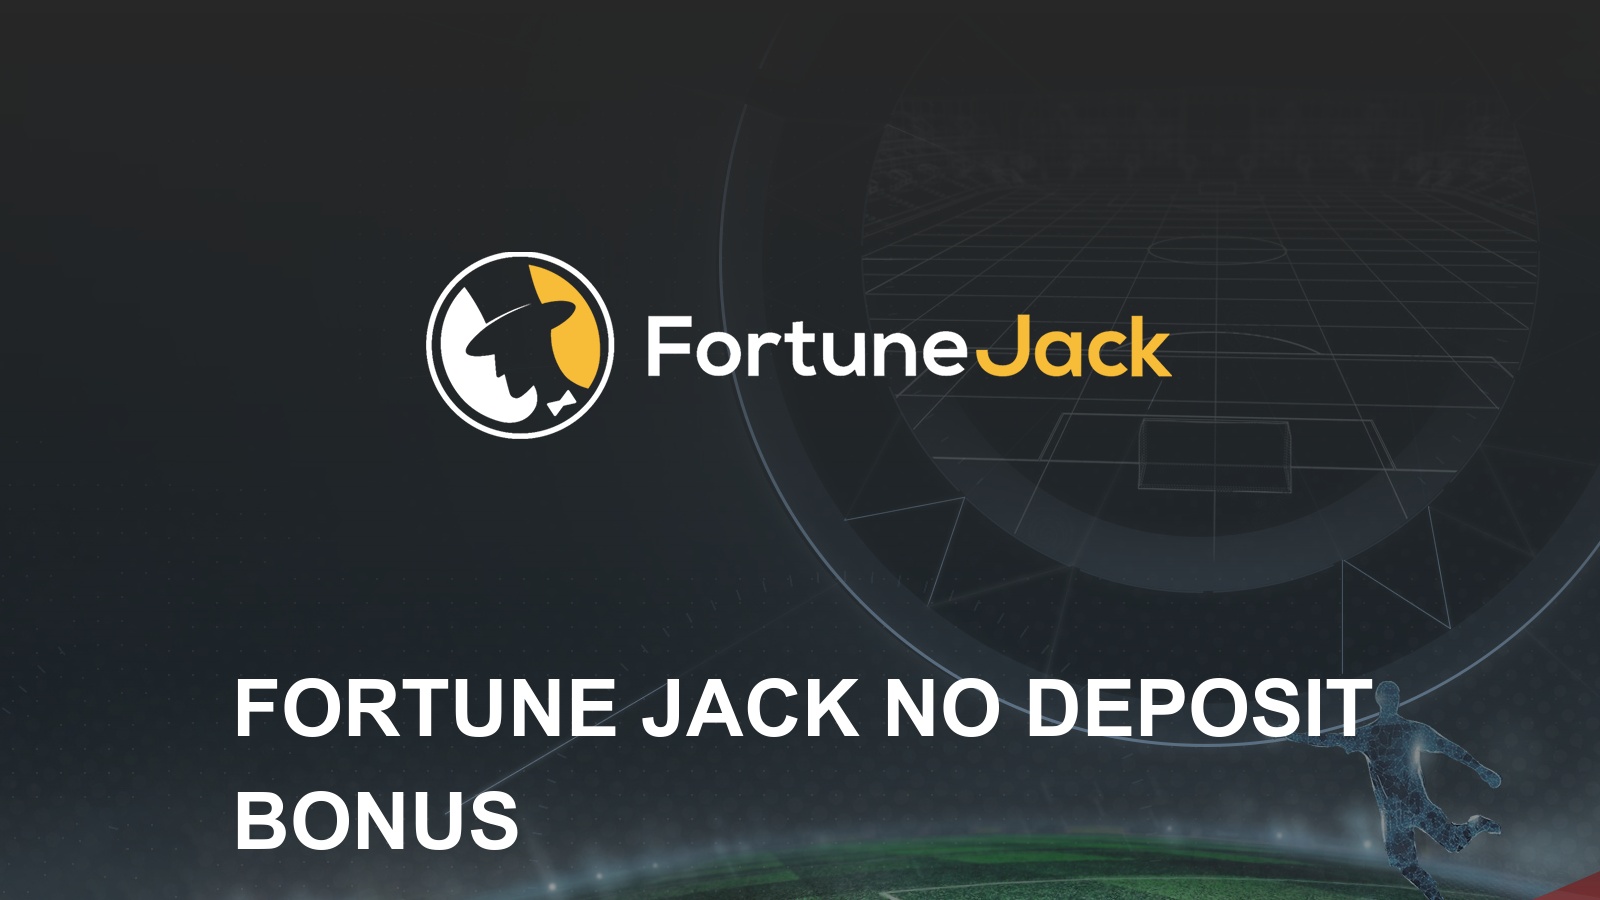 fortunejack no deposit bonus code